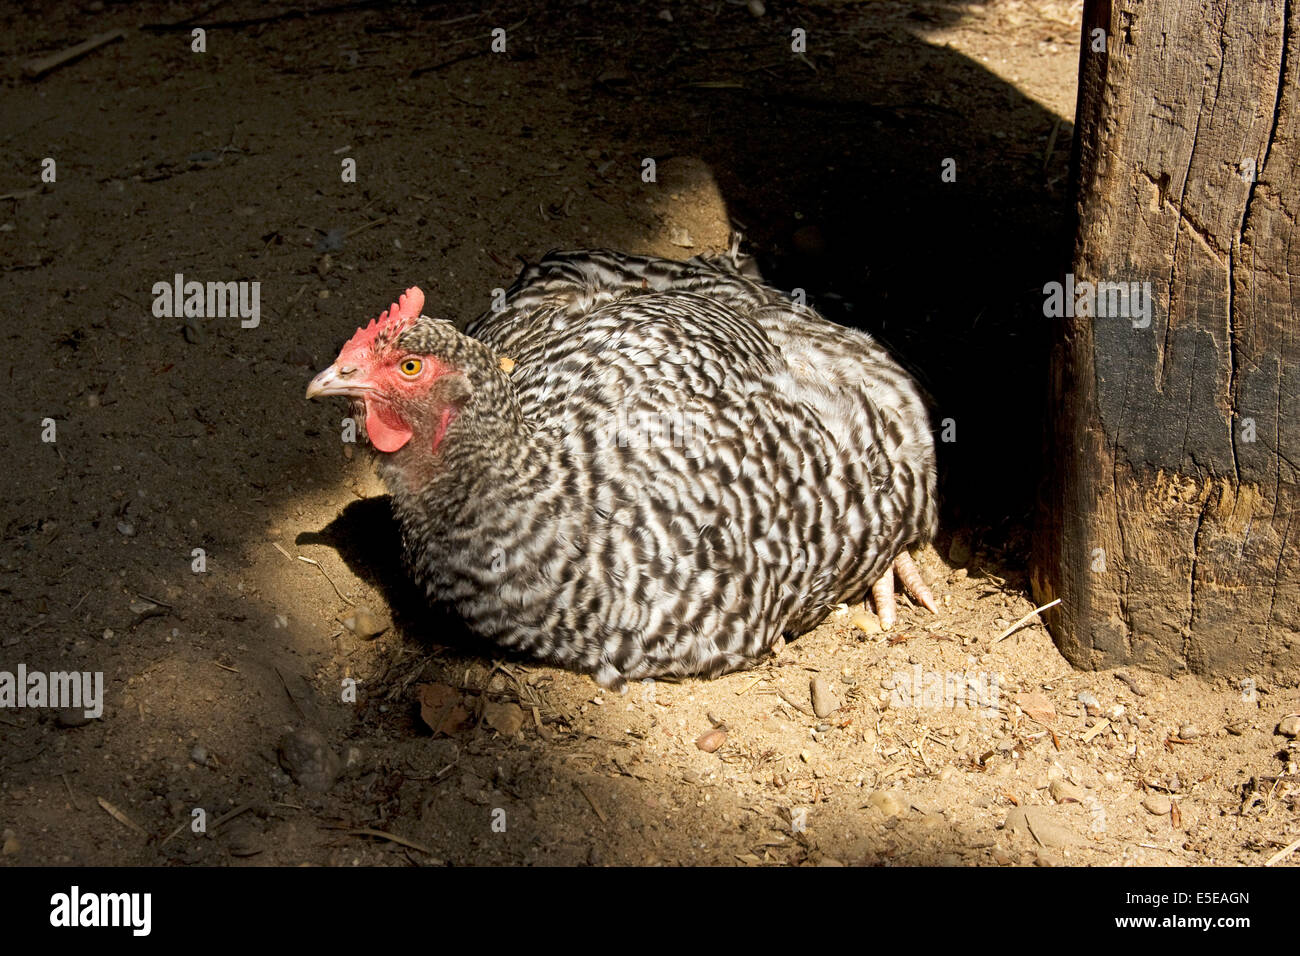 Free Range pastured poulet (Gallus gallus domesticus) prenant un bain de sable Banque D'Images